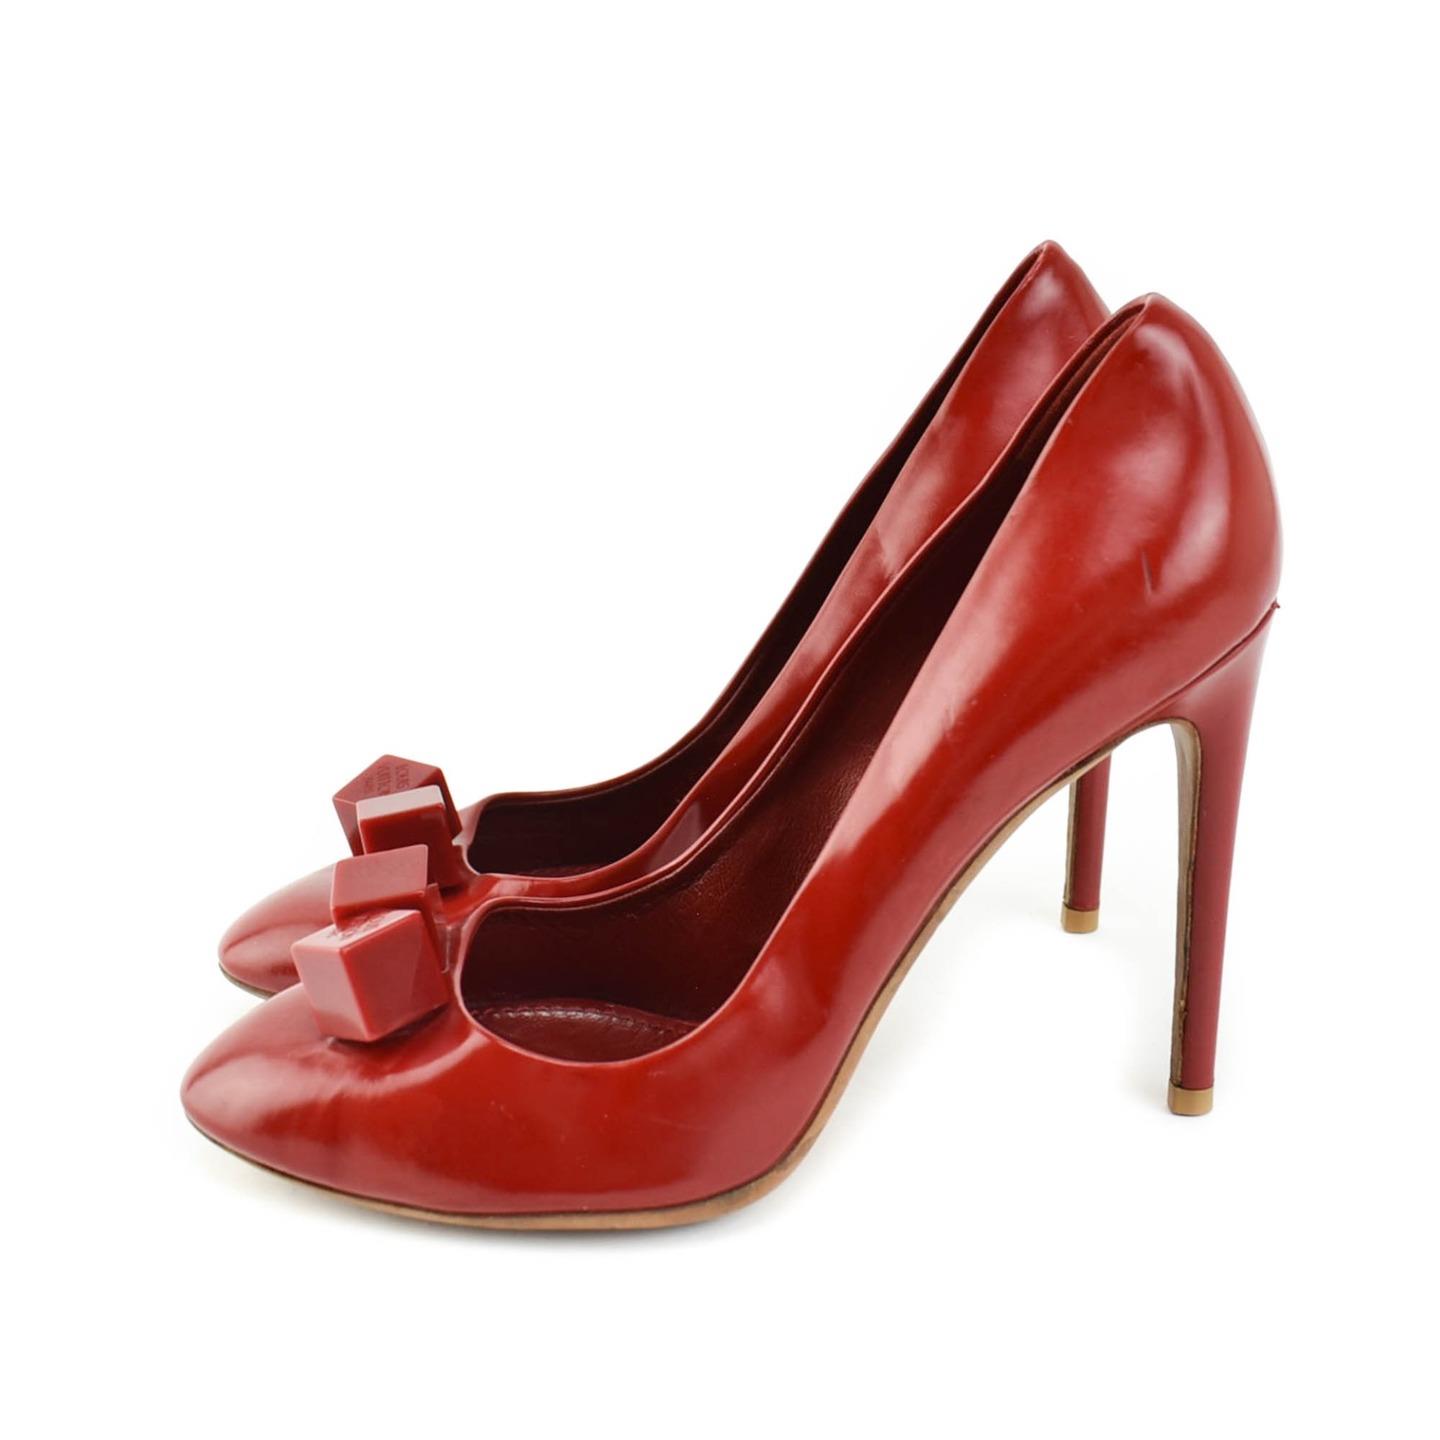 LOUIS VUITTON: Red, Leather & Logo &quot;Dice&quot; Heels/Pumps Sz: 7M | eBay